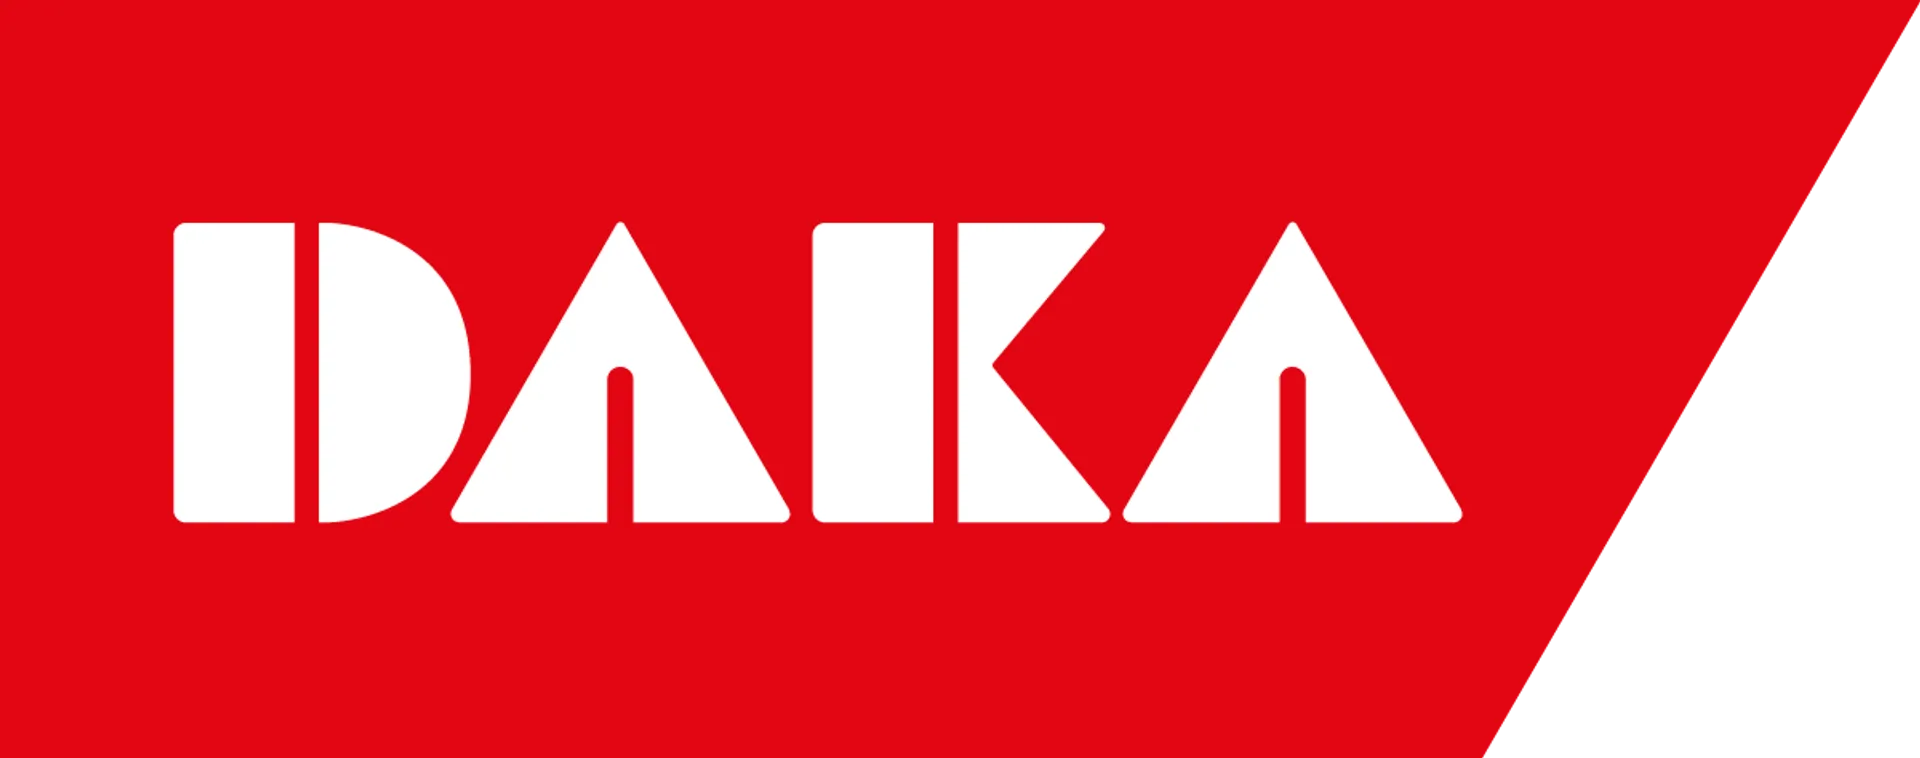 DAKA logo